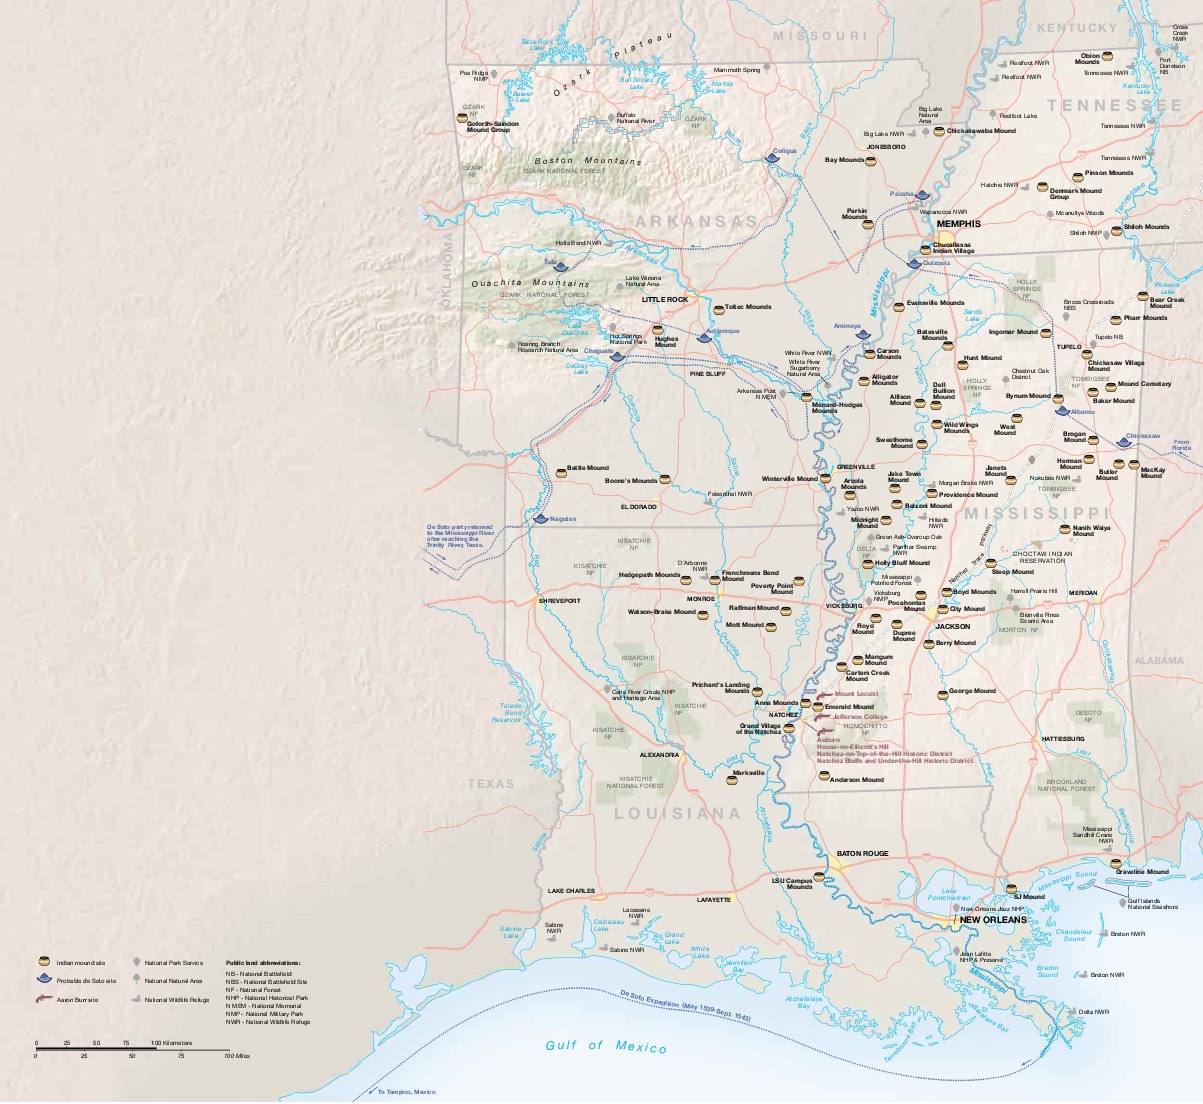 Mapa de los Montículos Funerarios, Valle del Río Misisipi, Luisiana y Misisipi